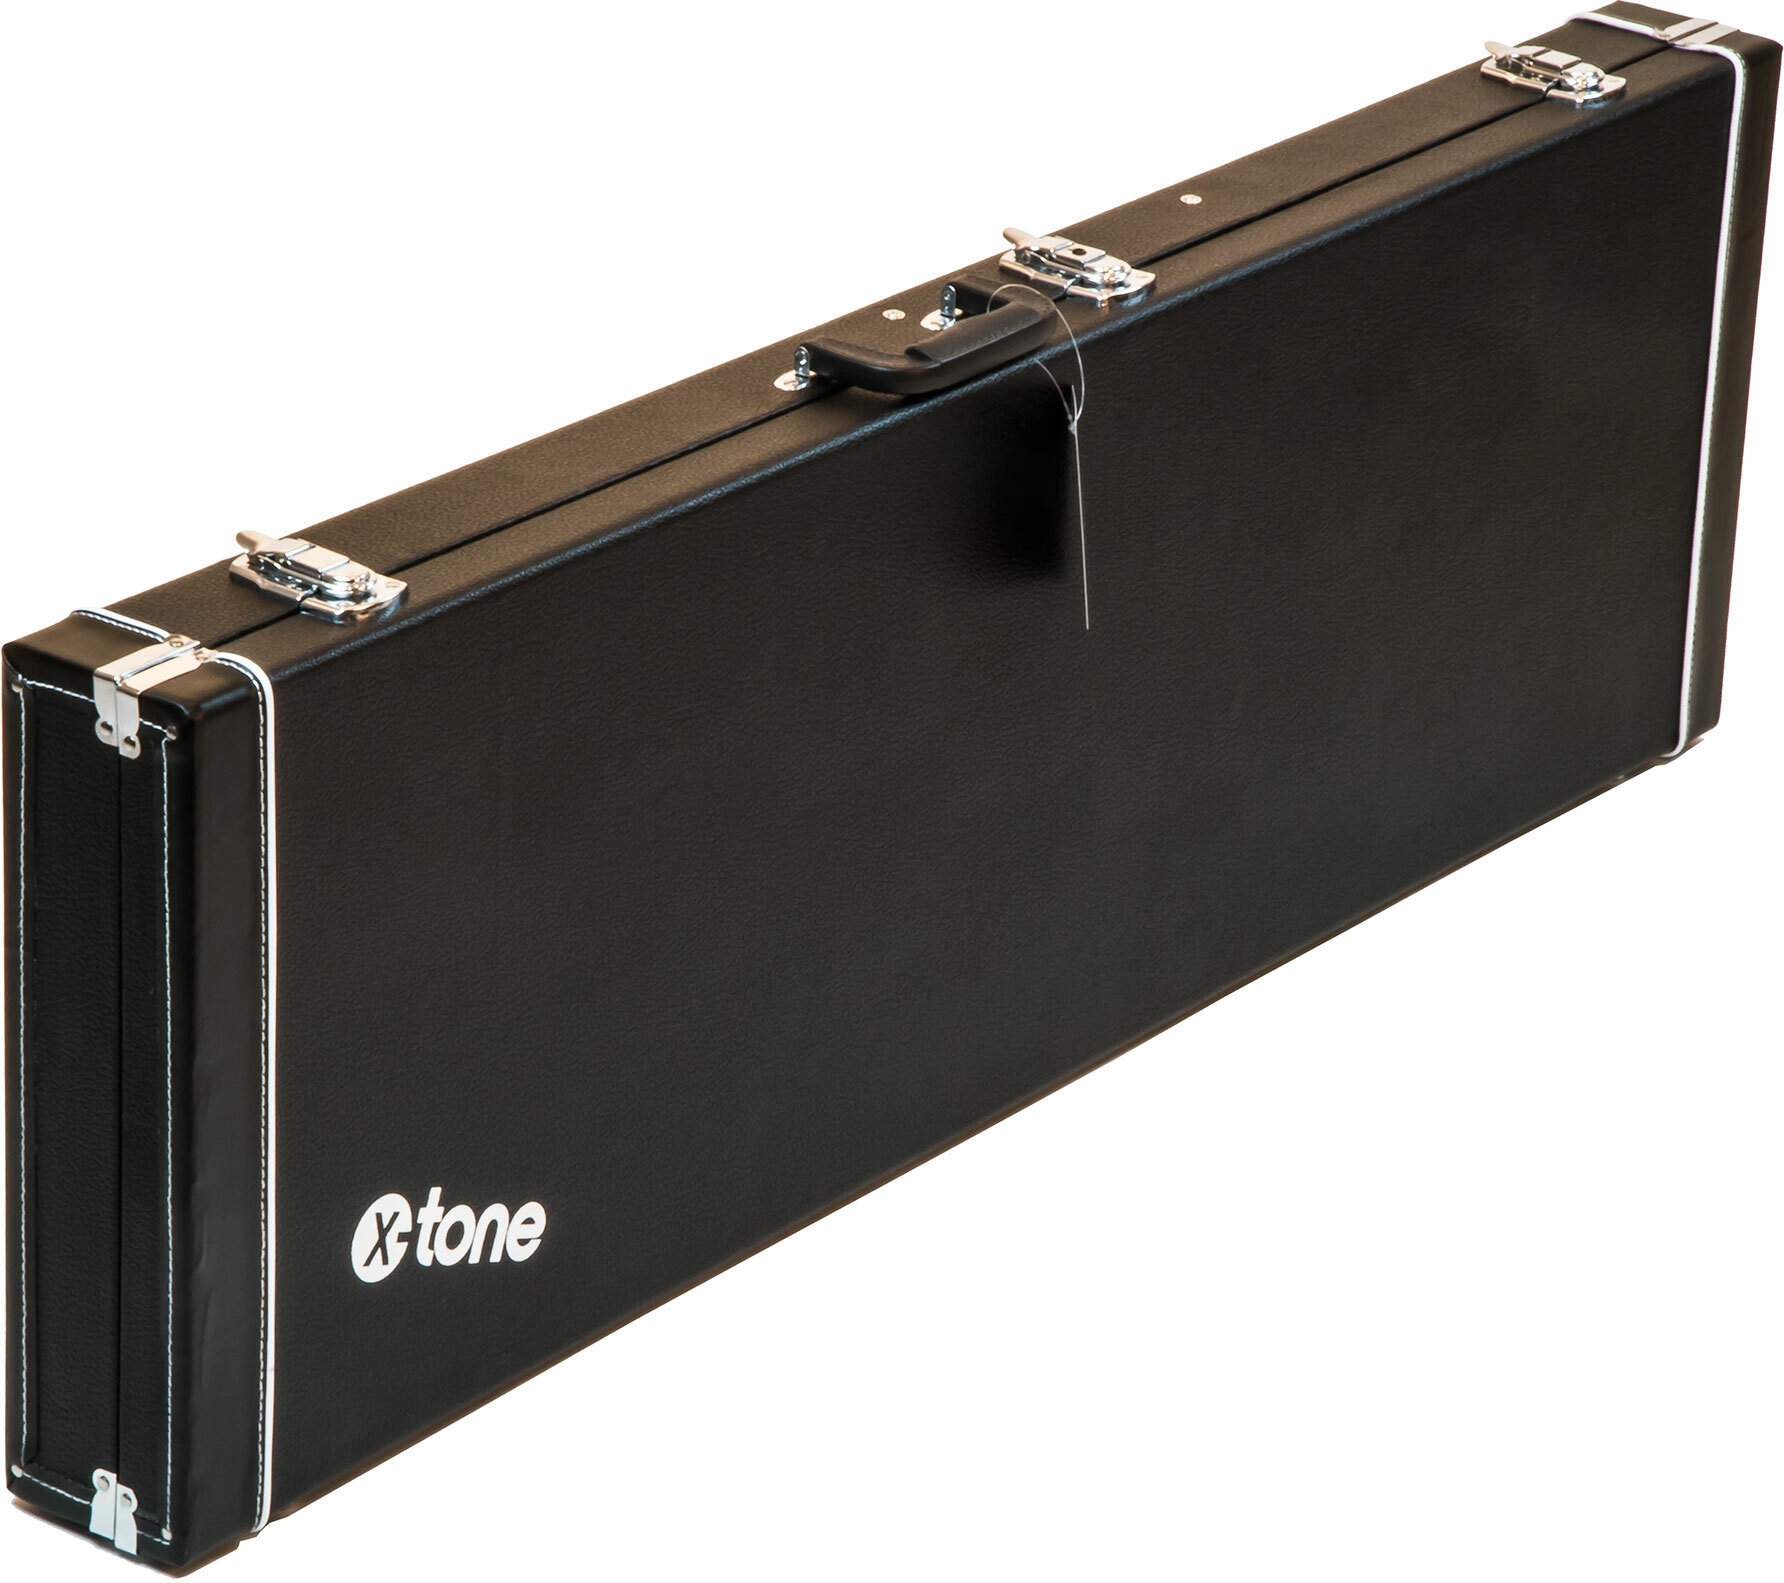 X-tone 1504 Standard Electrique Jazz/precision Bass Rectangulaire Black - Estuche para bajo eléctrico - Main picture